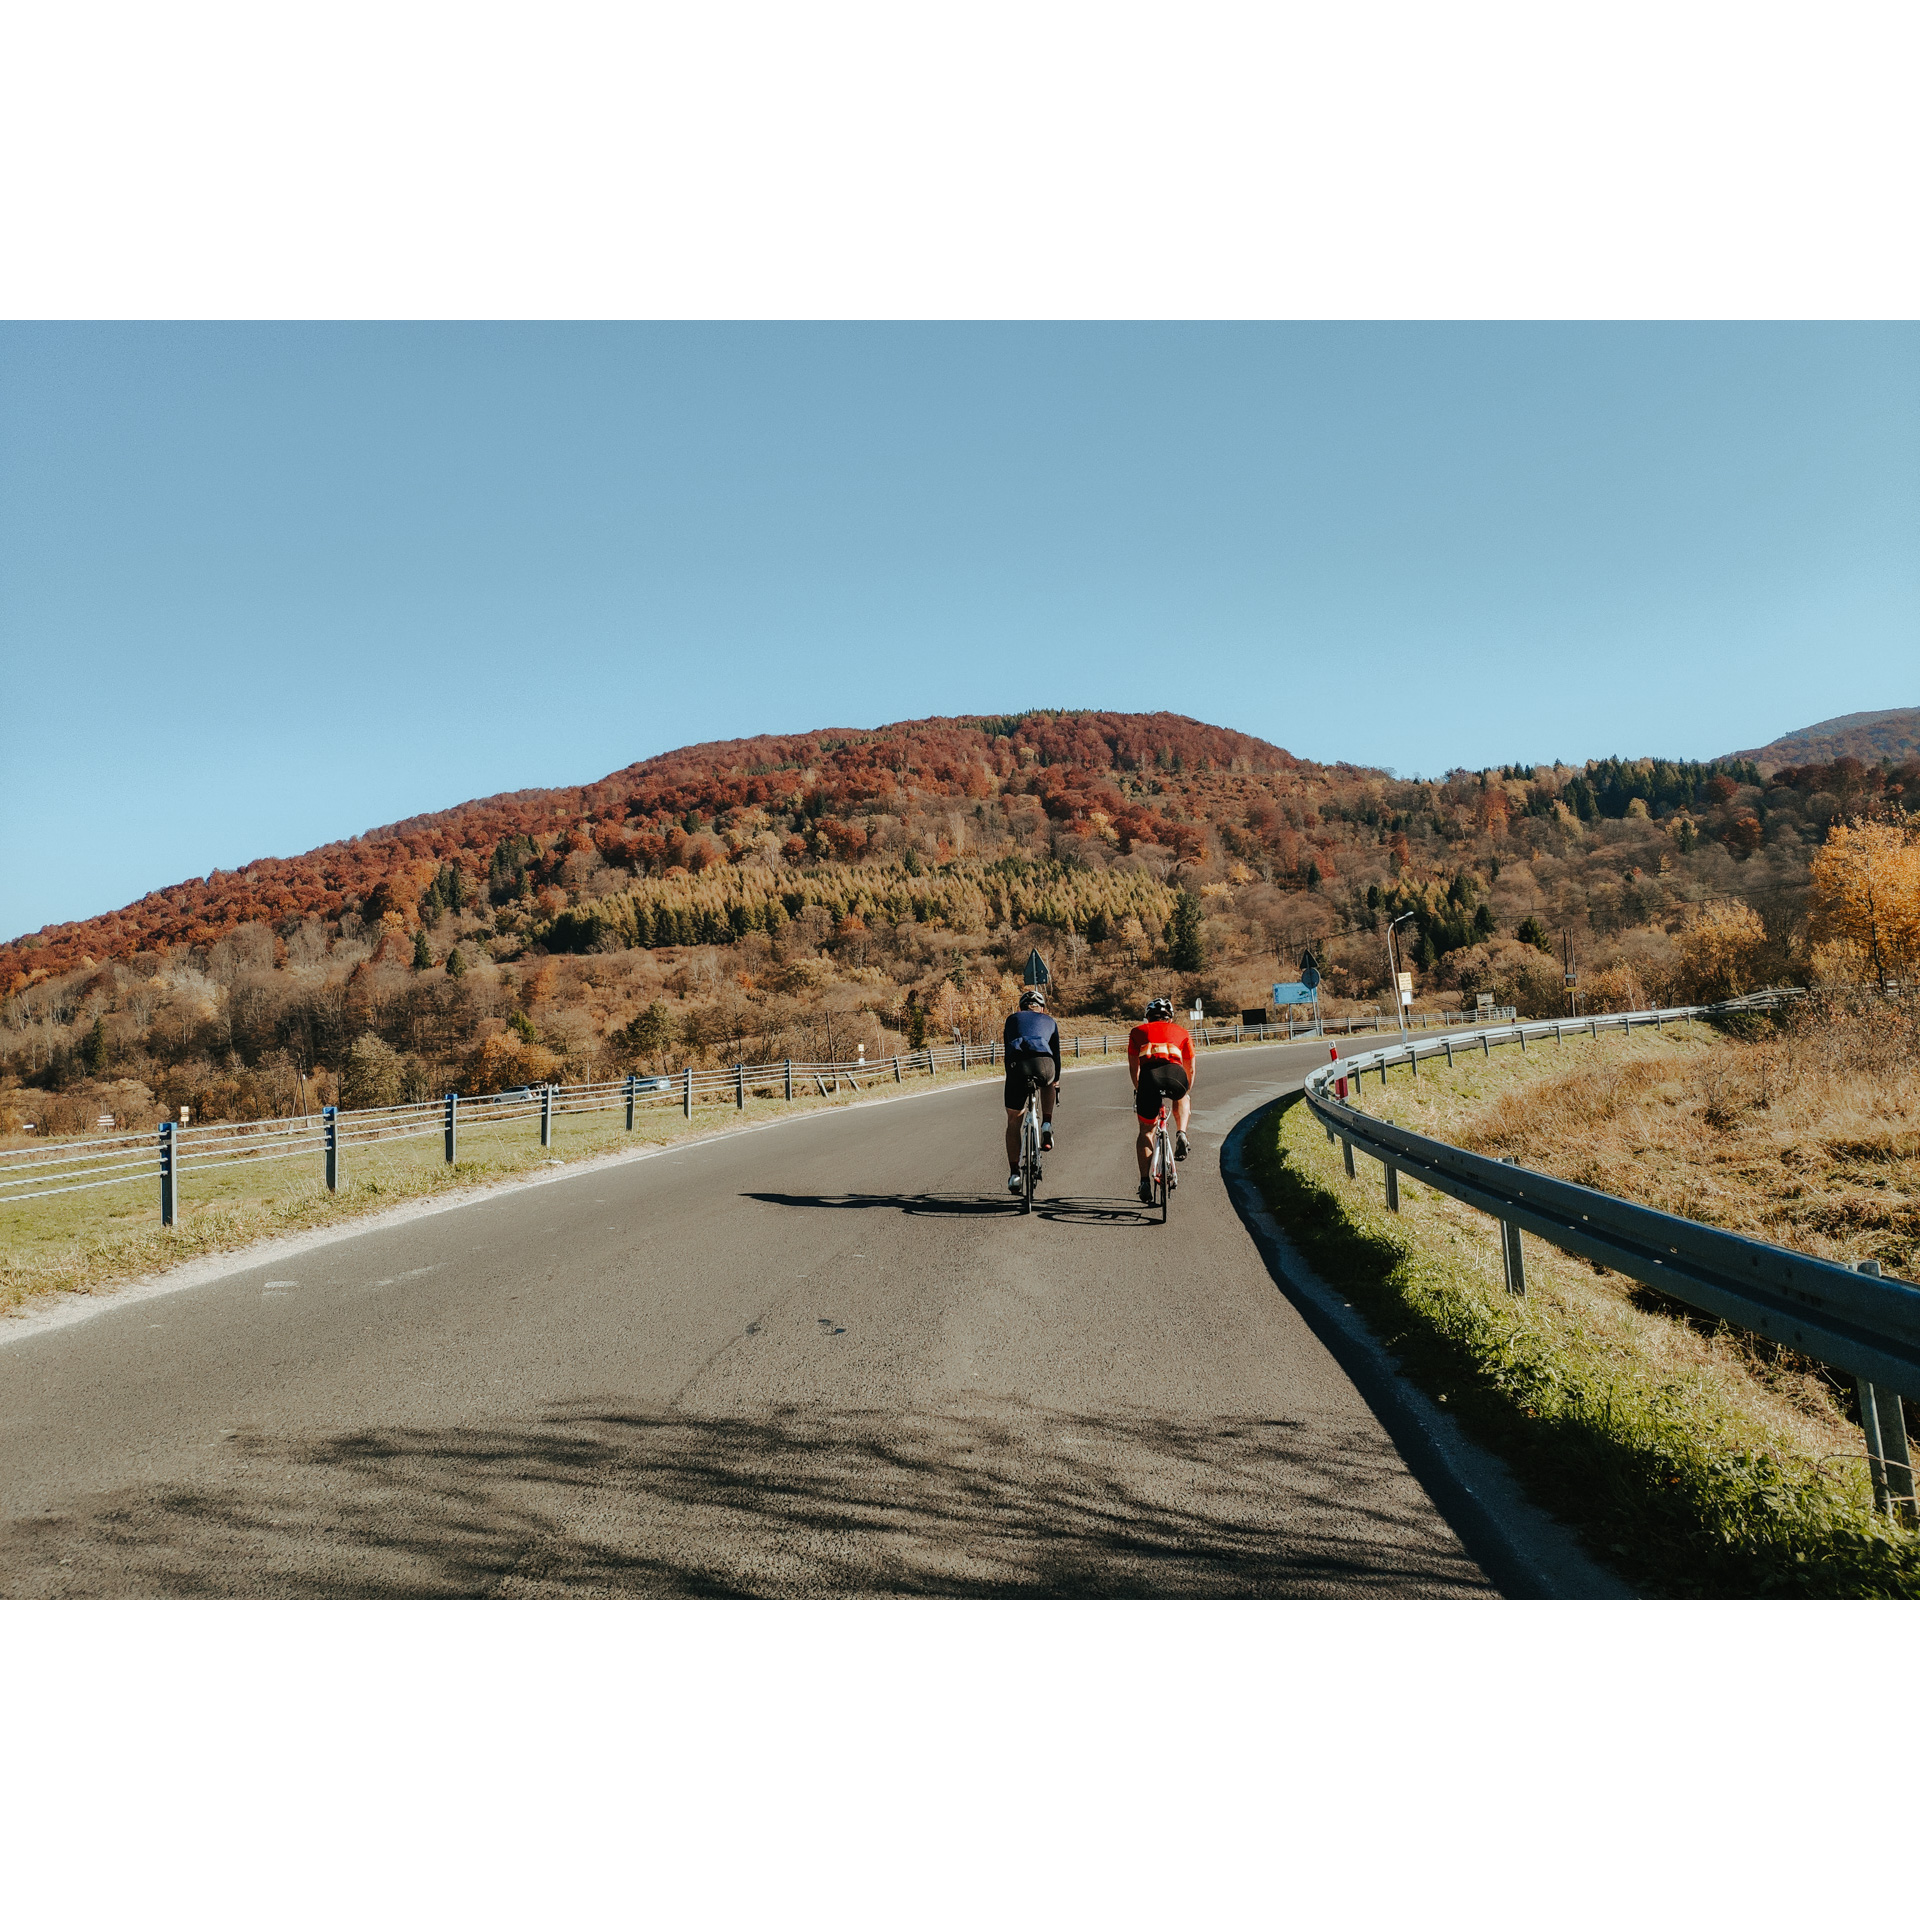 Mężczyzna ubrany na czerwono i mężczyzna ubrany na niebiesko jadący po asfaltowej drodze na tle zalesionej góry o jesiennych barwach